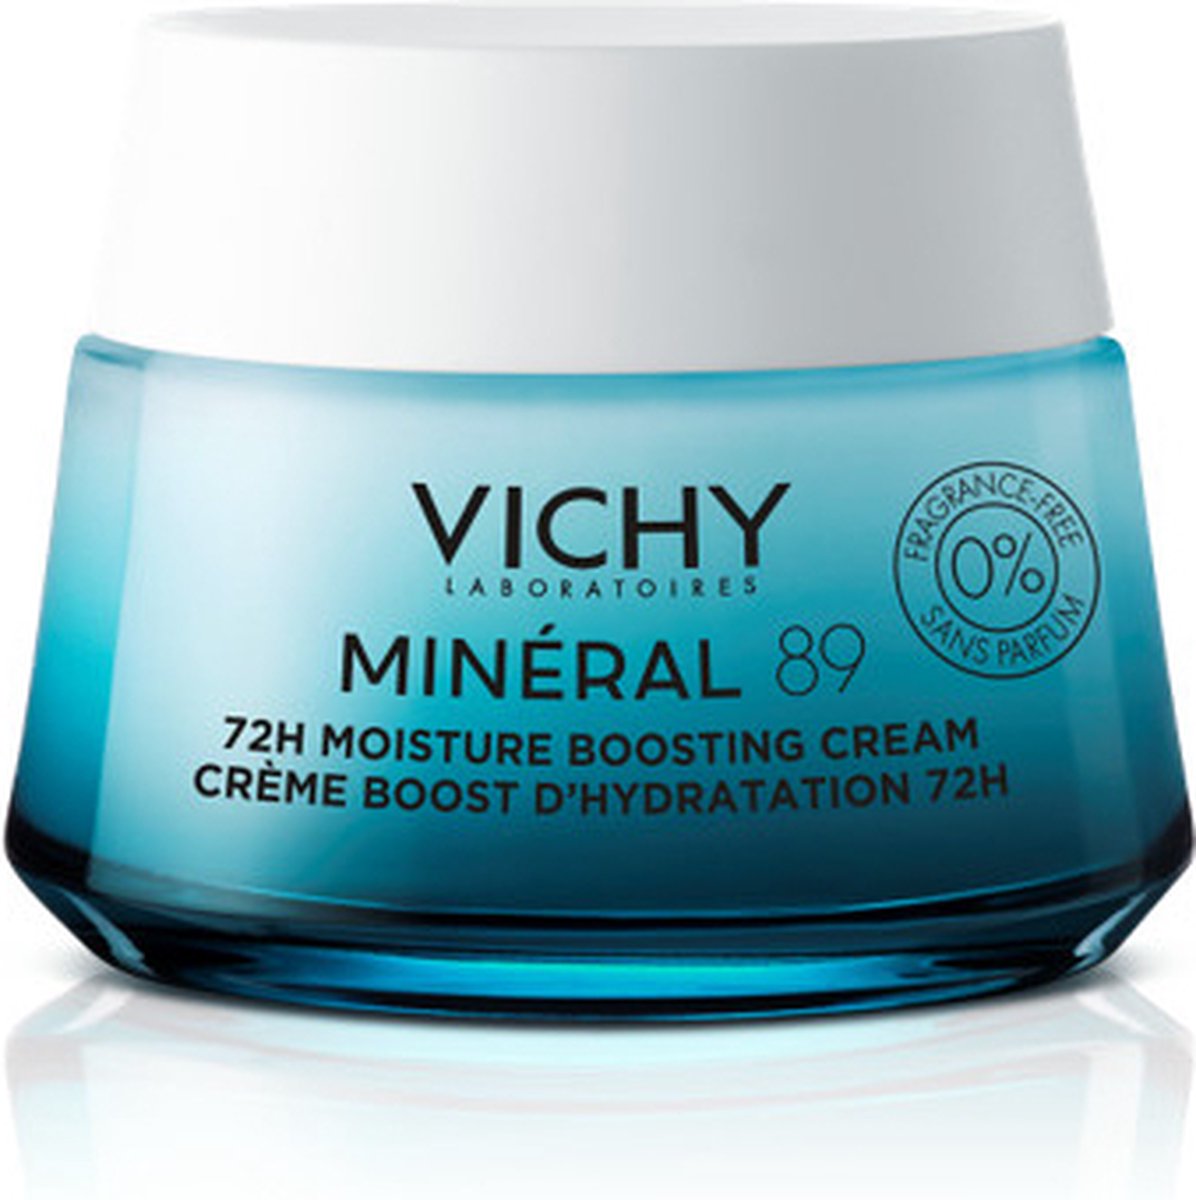 Vichy Minéral 89 72H Moisture Boosting Cream 50 ml